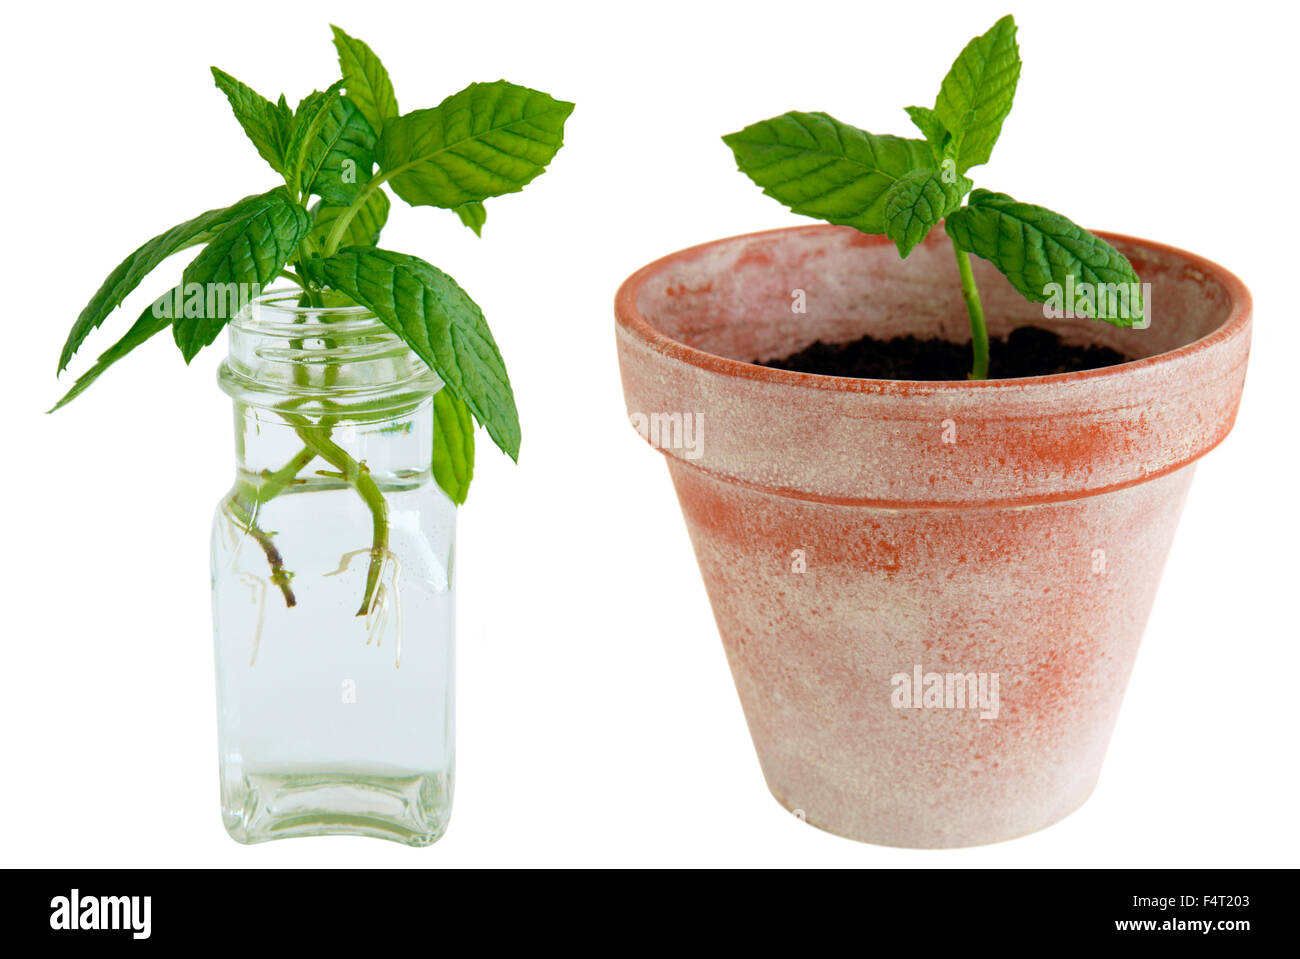 L'enracinement des boutures de menthe dans l'eau et de plantes en pot. Banque D'Images